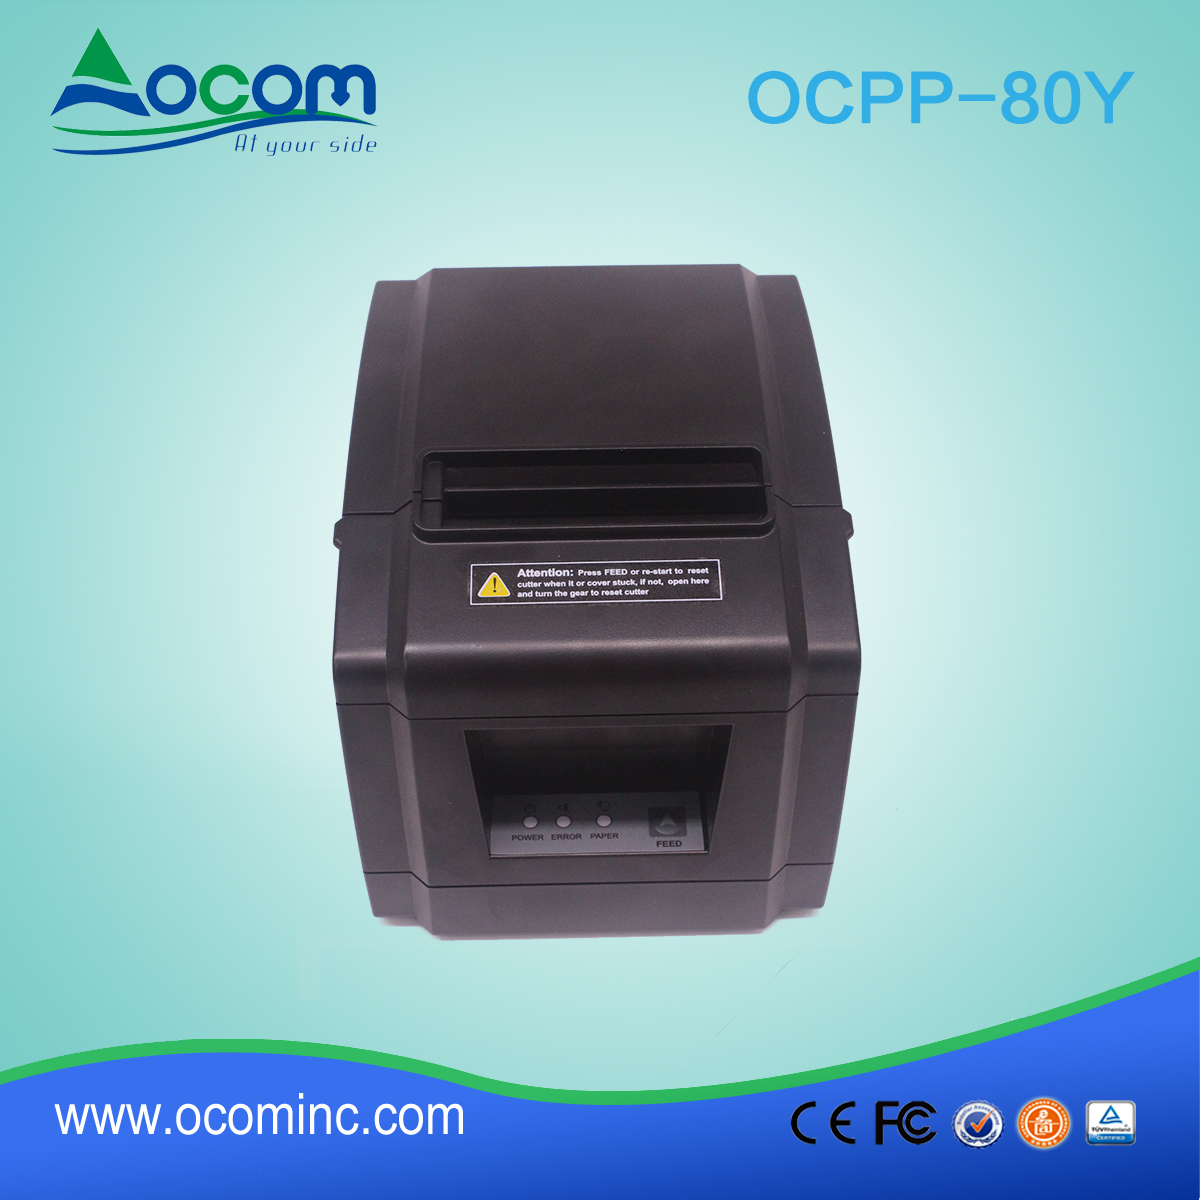 أوكب-80Y- رخيصة 80 ملليمتر بوس استلام الطابعة الحرارية مع السيارات القاطع